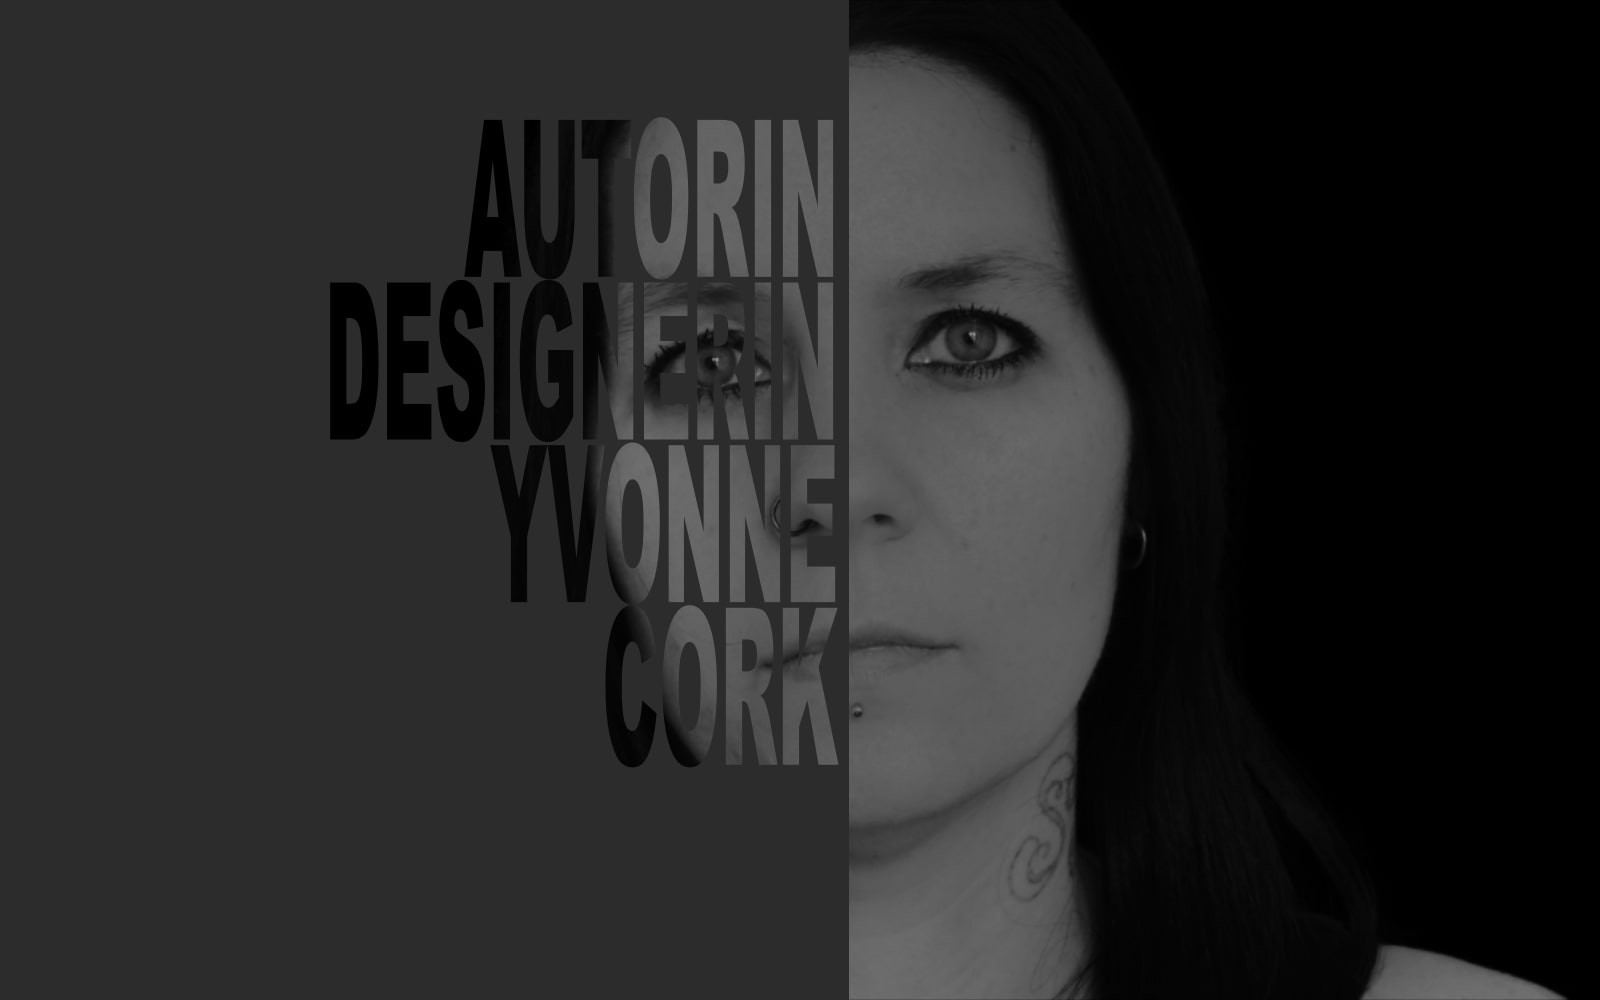 Autorin & Designerin Yvonne Cork